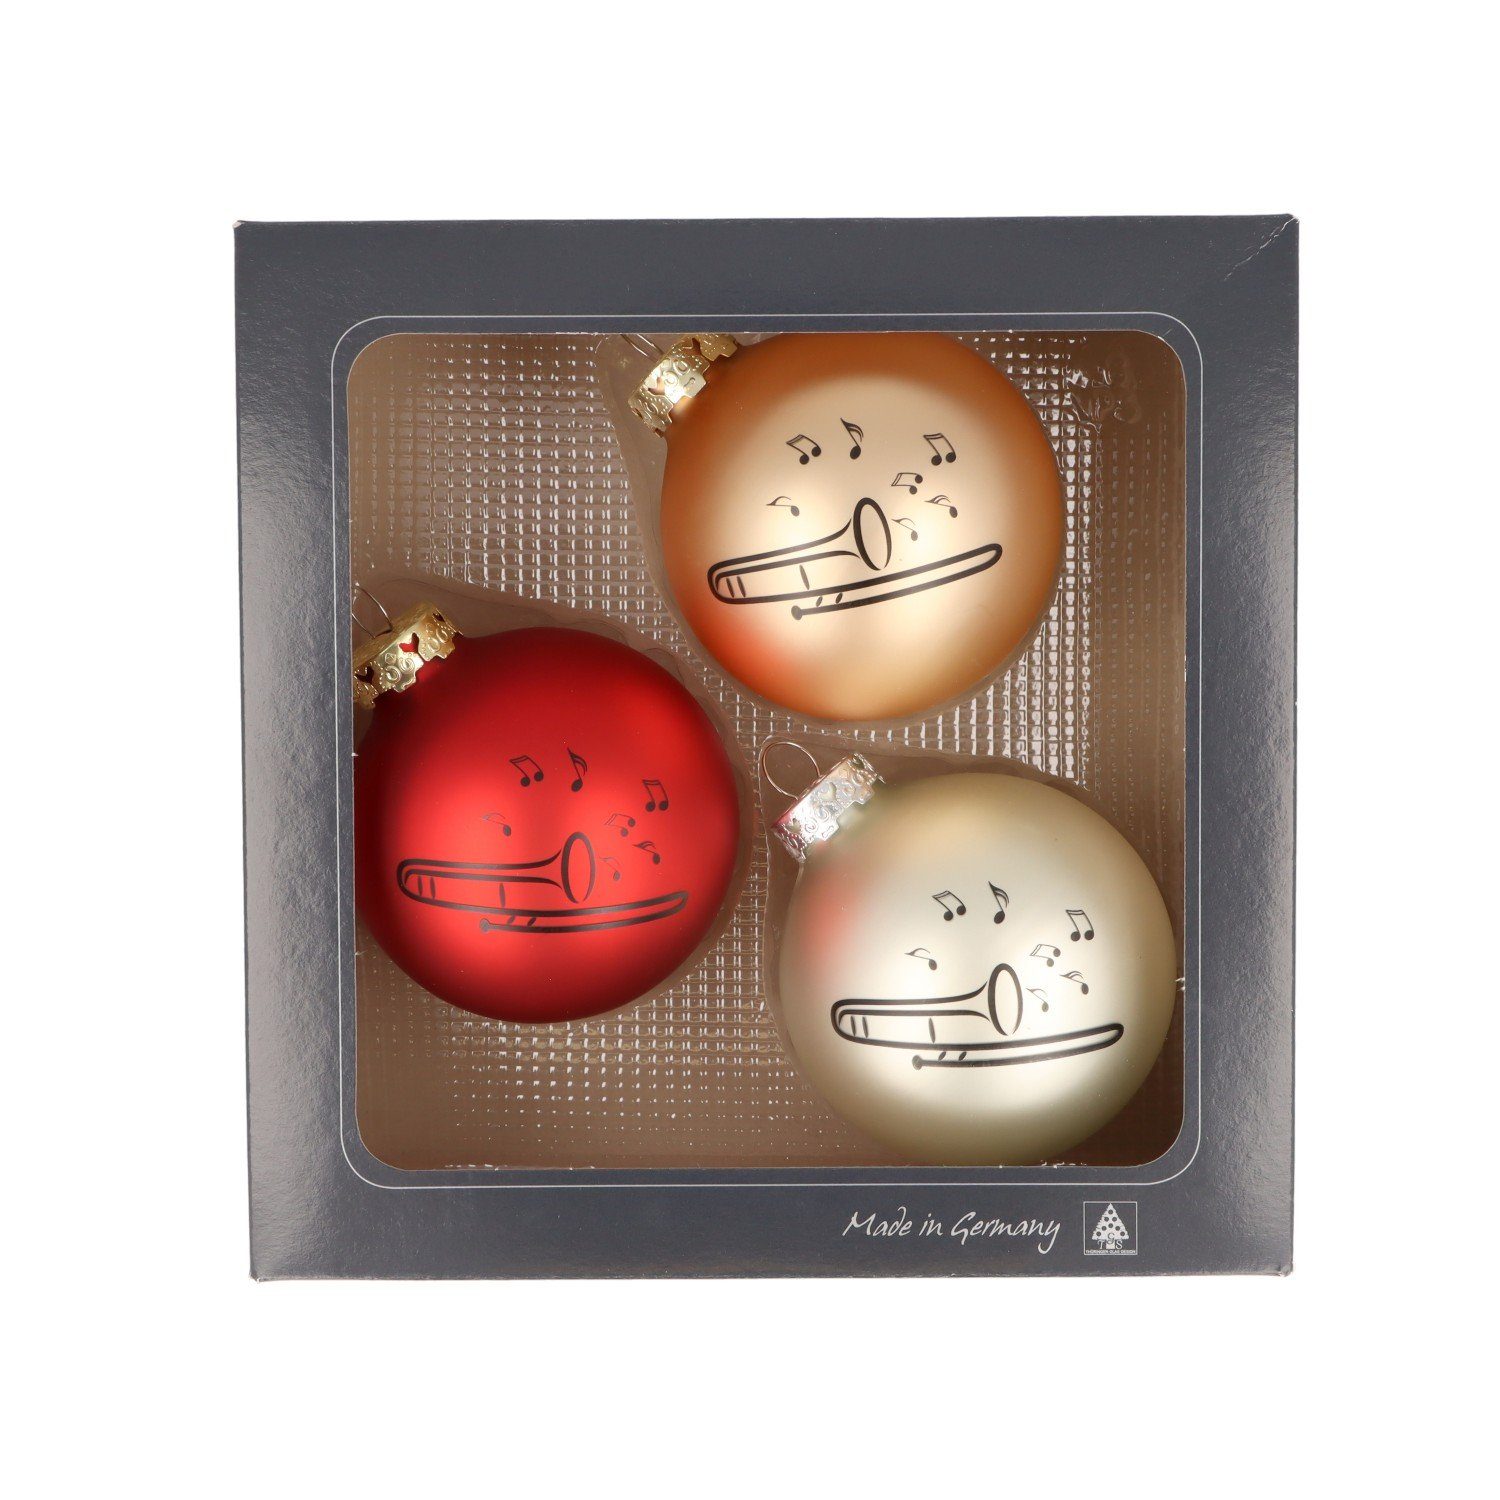 Musikboutique Weihnachtsbaumkugel, 3er-Set aus Glas mit schwarzem Posaune-Druck, Farbe rot/gold/silber